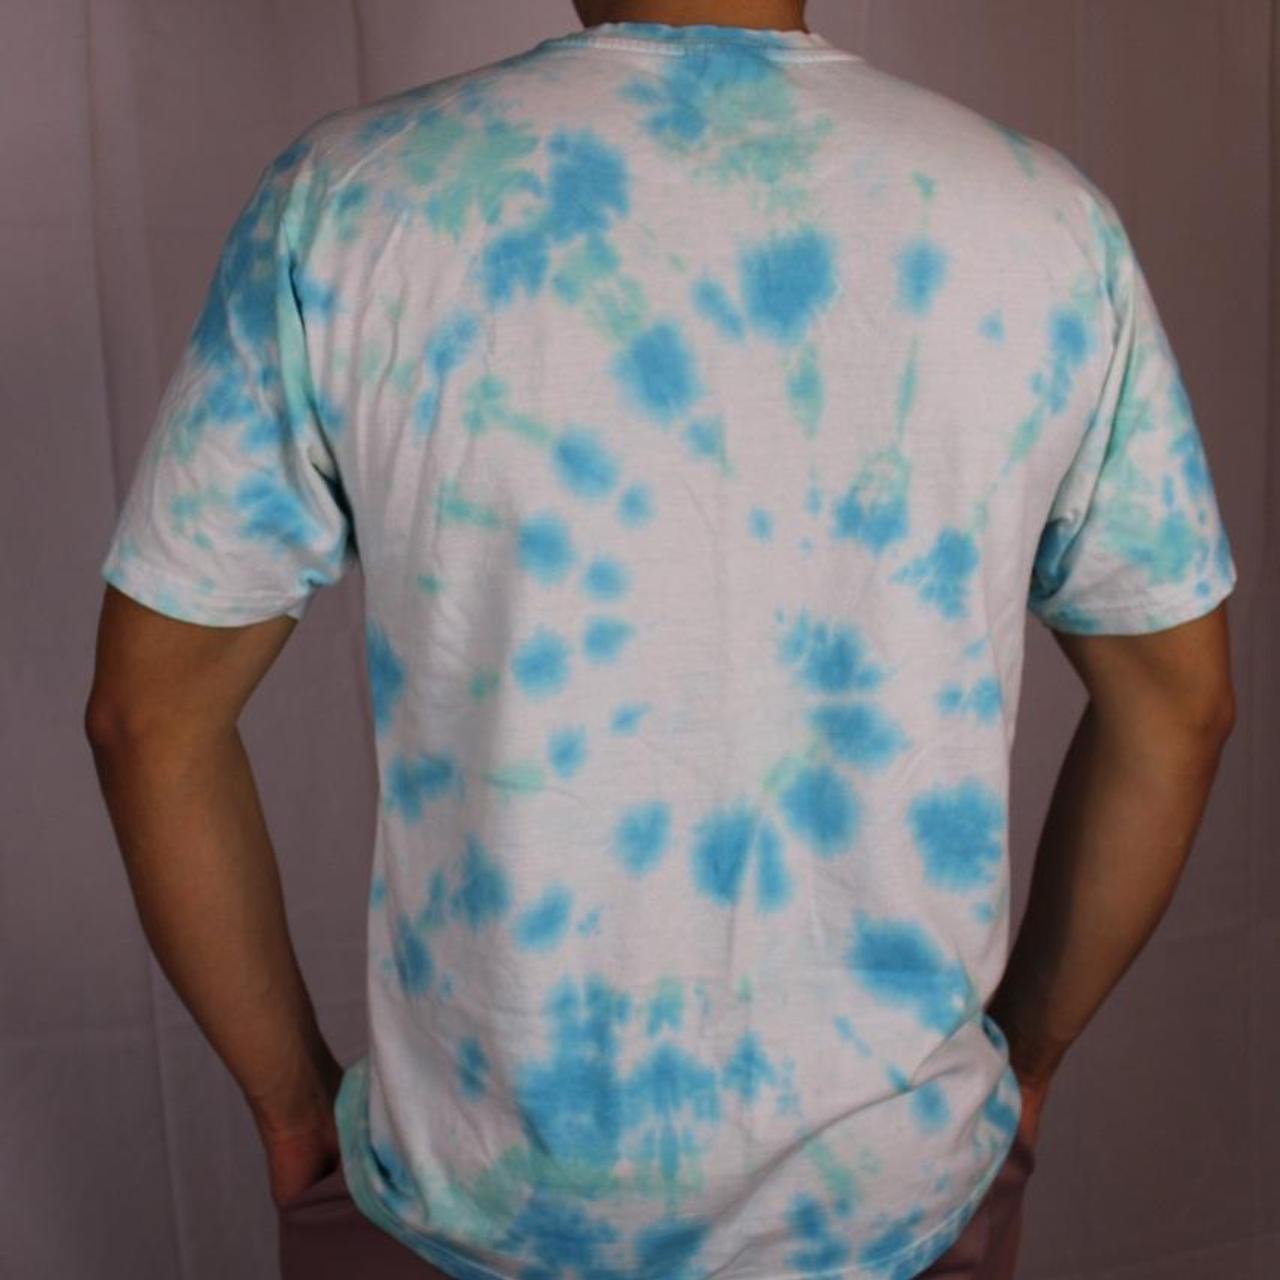 Product Image 2 - Tye dye shirt size medium